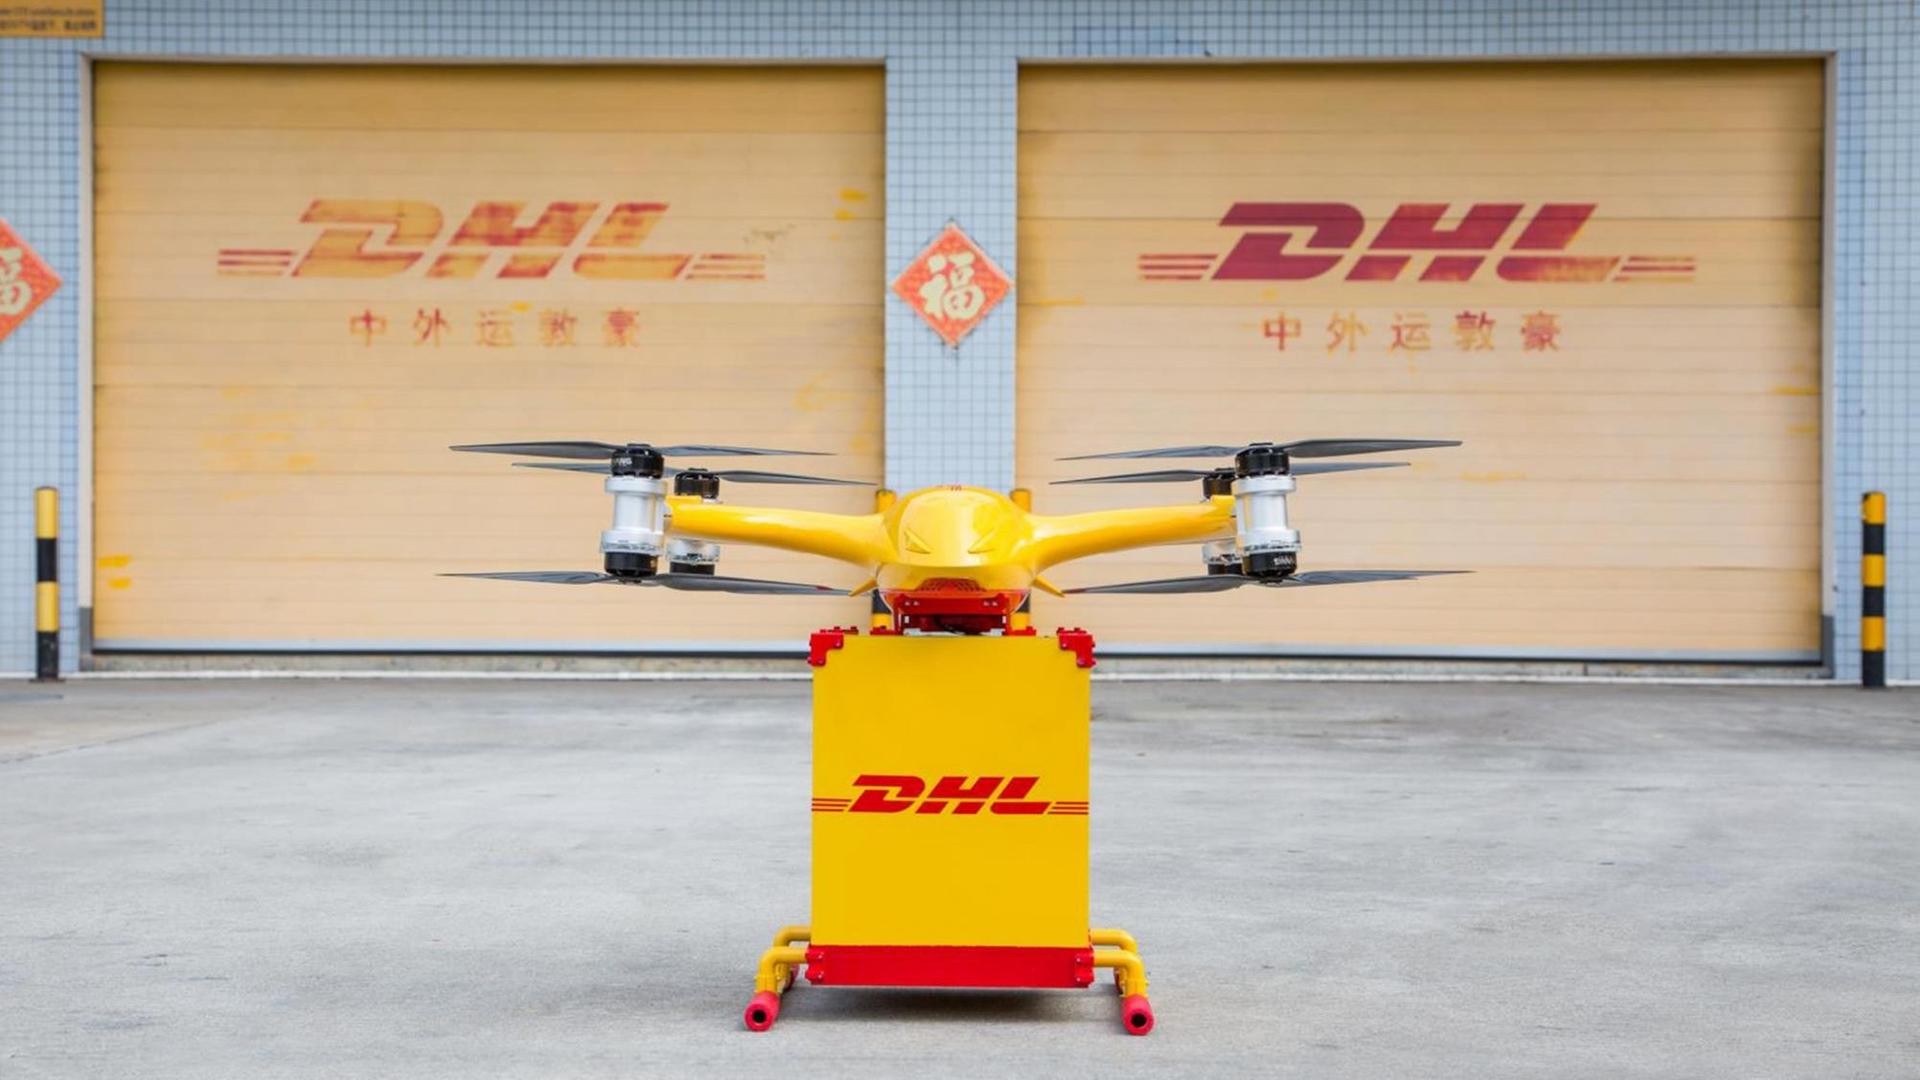 Eine Lieferdrohne mit dem DHL-Logo. Die erste innerstädtische Drohnen-Lieferroute in China ist am 16.05.2019 in der südchinesischen Metropole Guangzhou in Betrieb gegangen. Zwischen zwei Landestationen bringen die Fluggeräte jeweils bis zu fünf Kilogramm schwere Kisten mit Express-Sendungen.